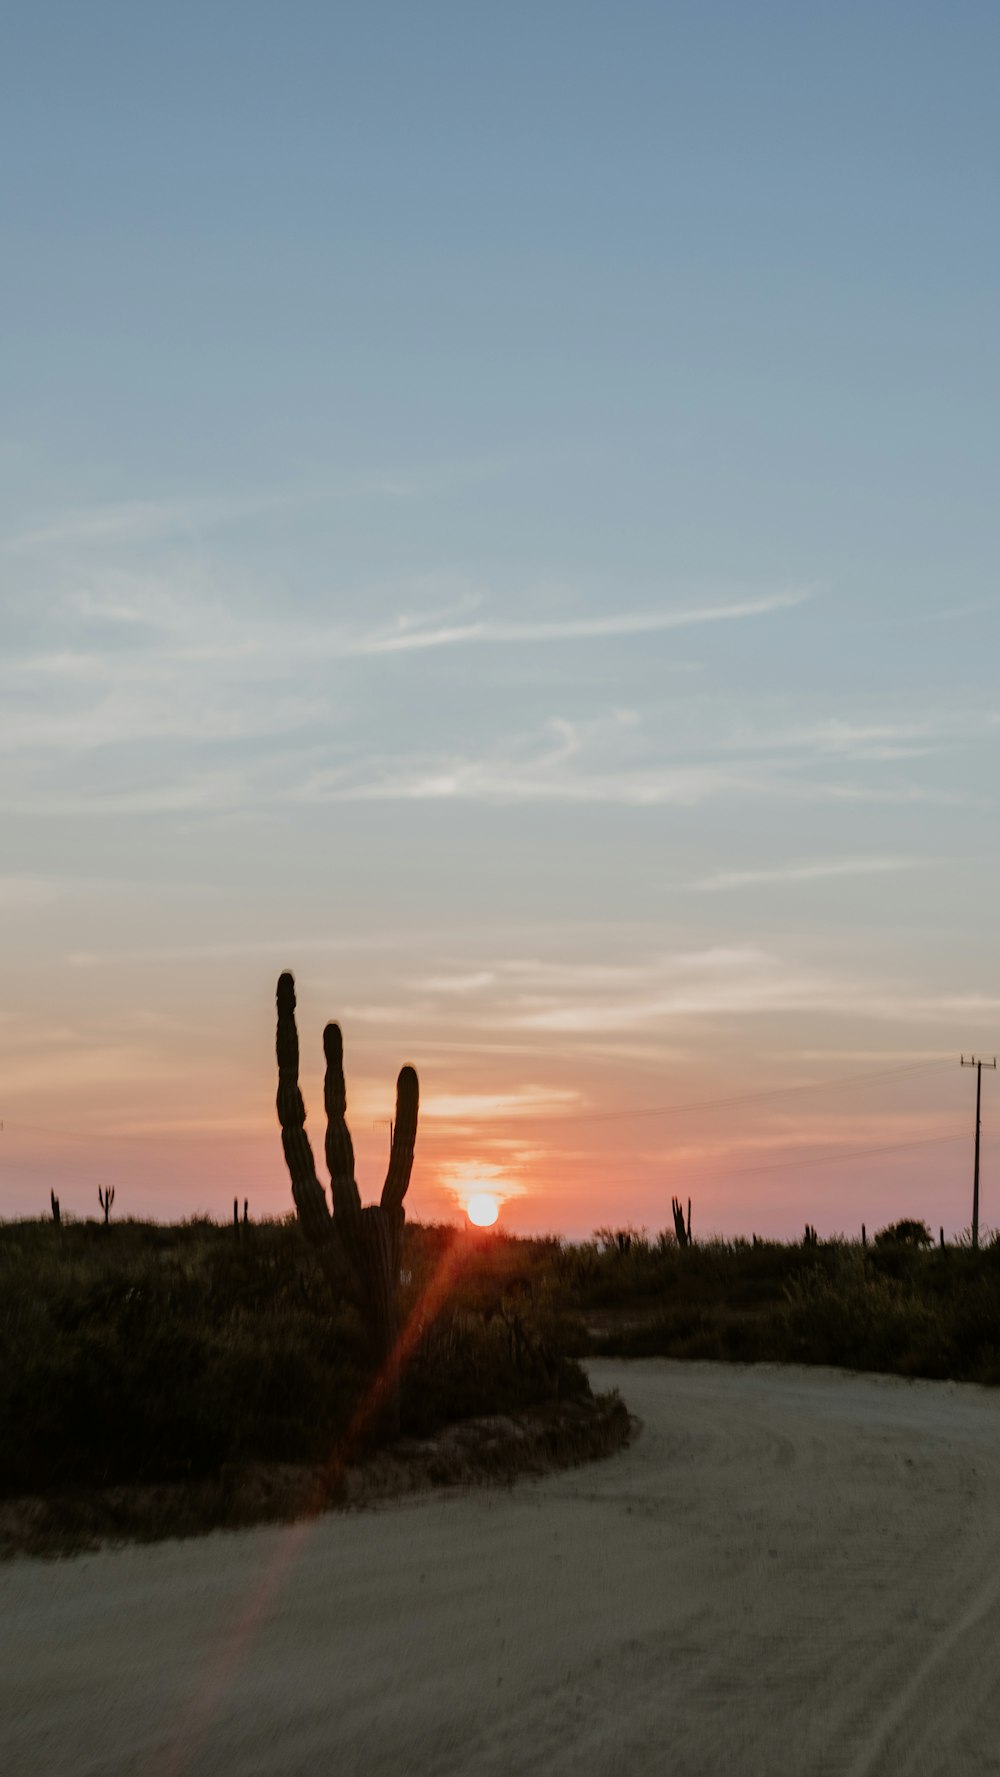 Un grupo de cactus frente a una puesta de sol